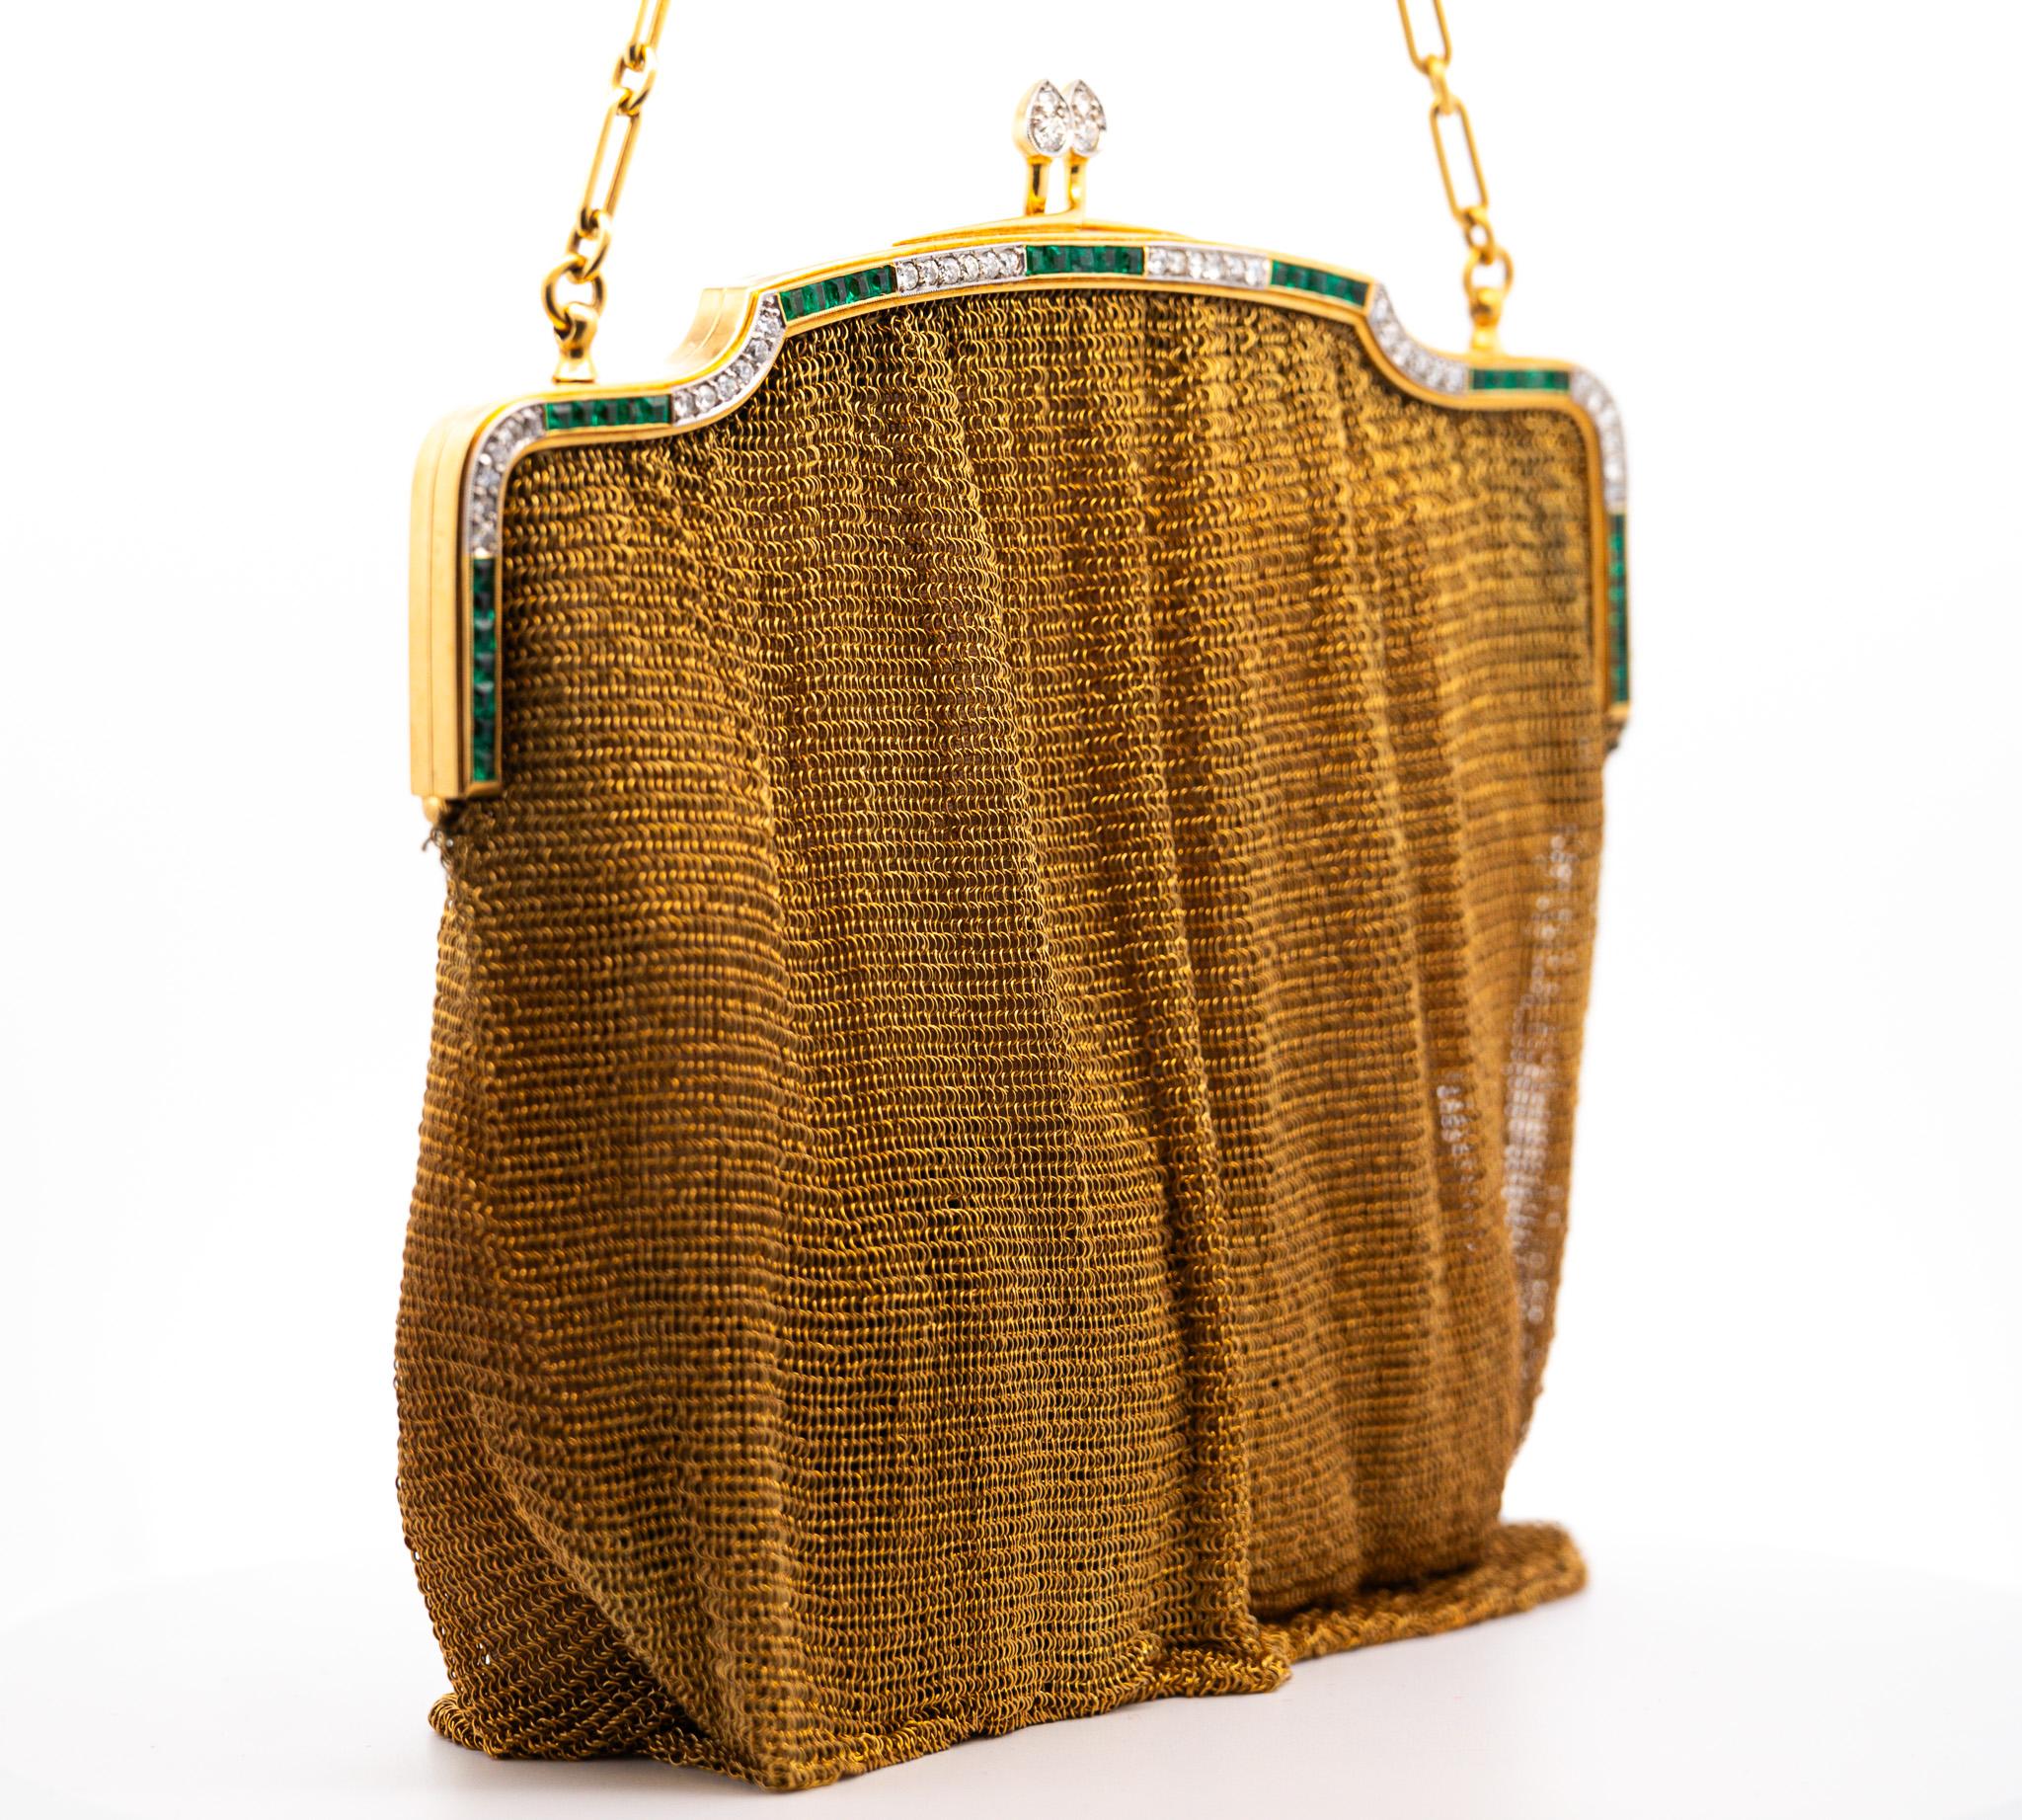 Angeboten wird eine äußerst seltene und begehrte 18 Karat Gold Art Deco Abendtasche mit einem Diamanten und Smaragd Rahmen. Ein Zeugnis der opulenten Eleganz des frühen 20. Jahrhunderts.

Diese Vintage-Gewebetasche stammt aus den 1920er- bis